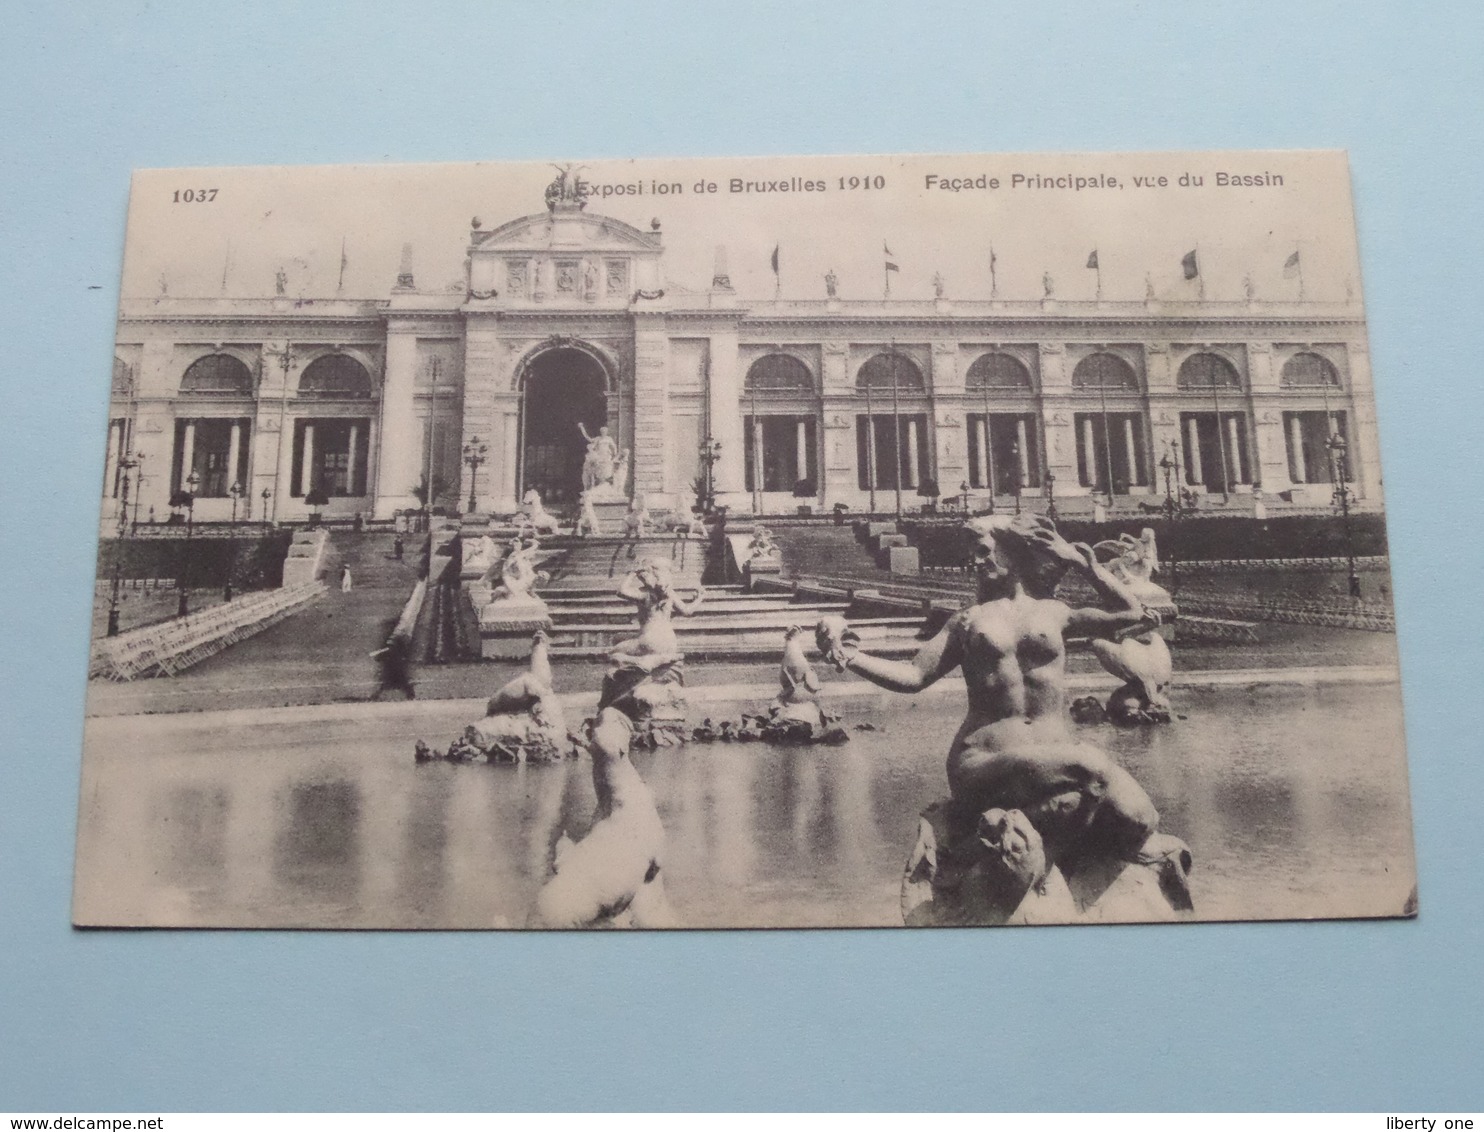 Exposition De Bruxelles - Façade Principale, Vue Du Bassin ( 1037 - Valentine ) 1910 ( Voir / Zie Photo ) ! - Expositions Universelles